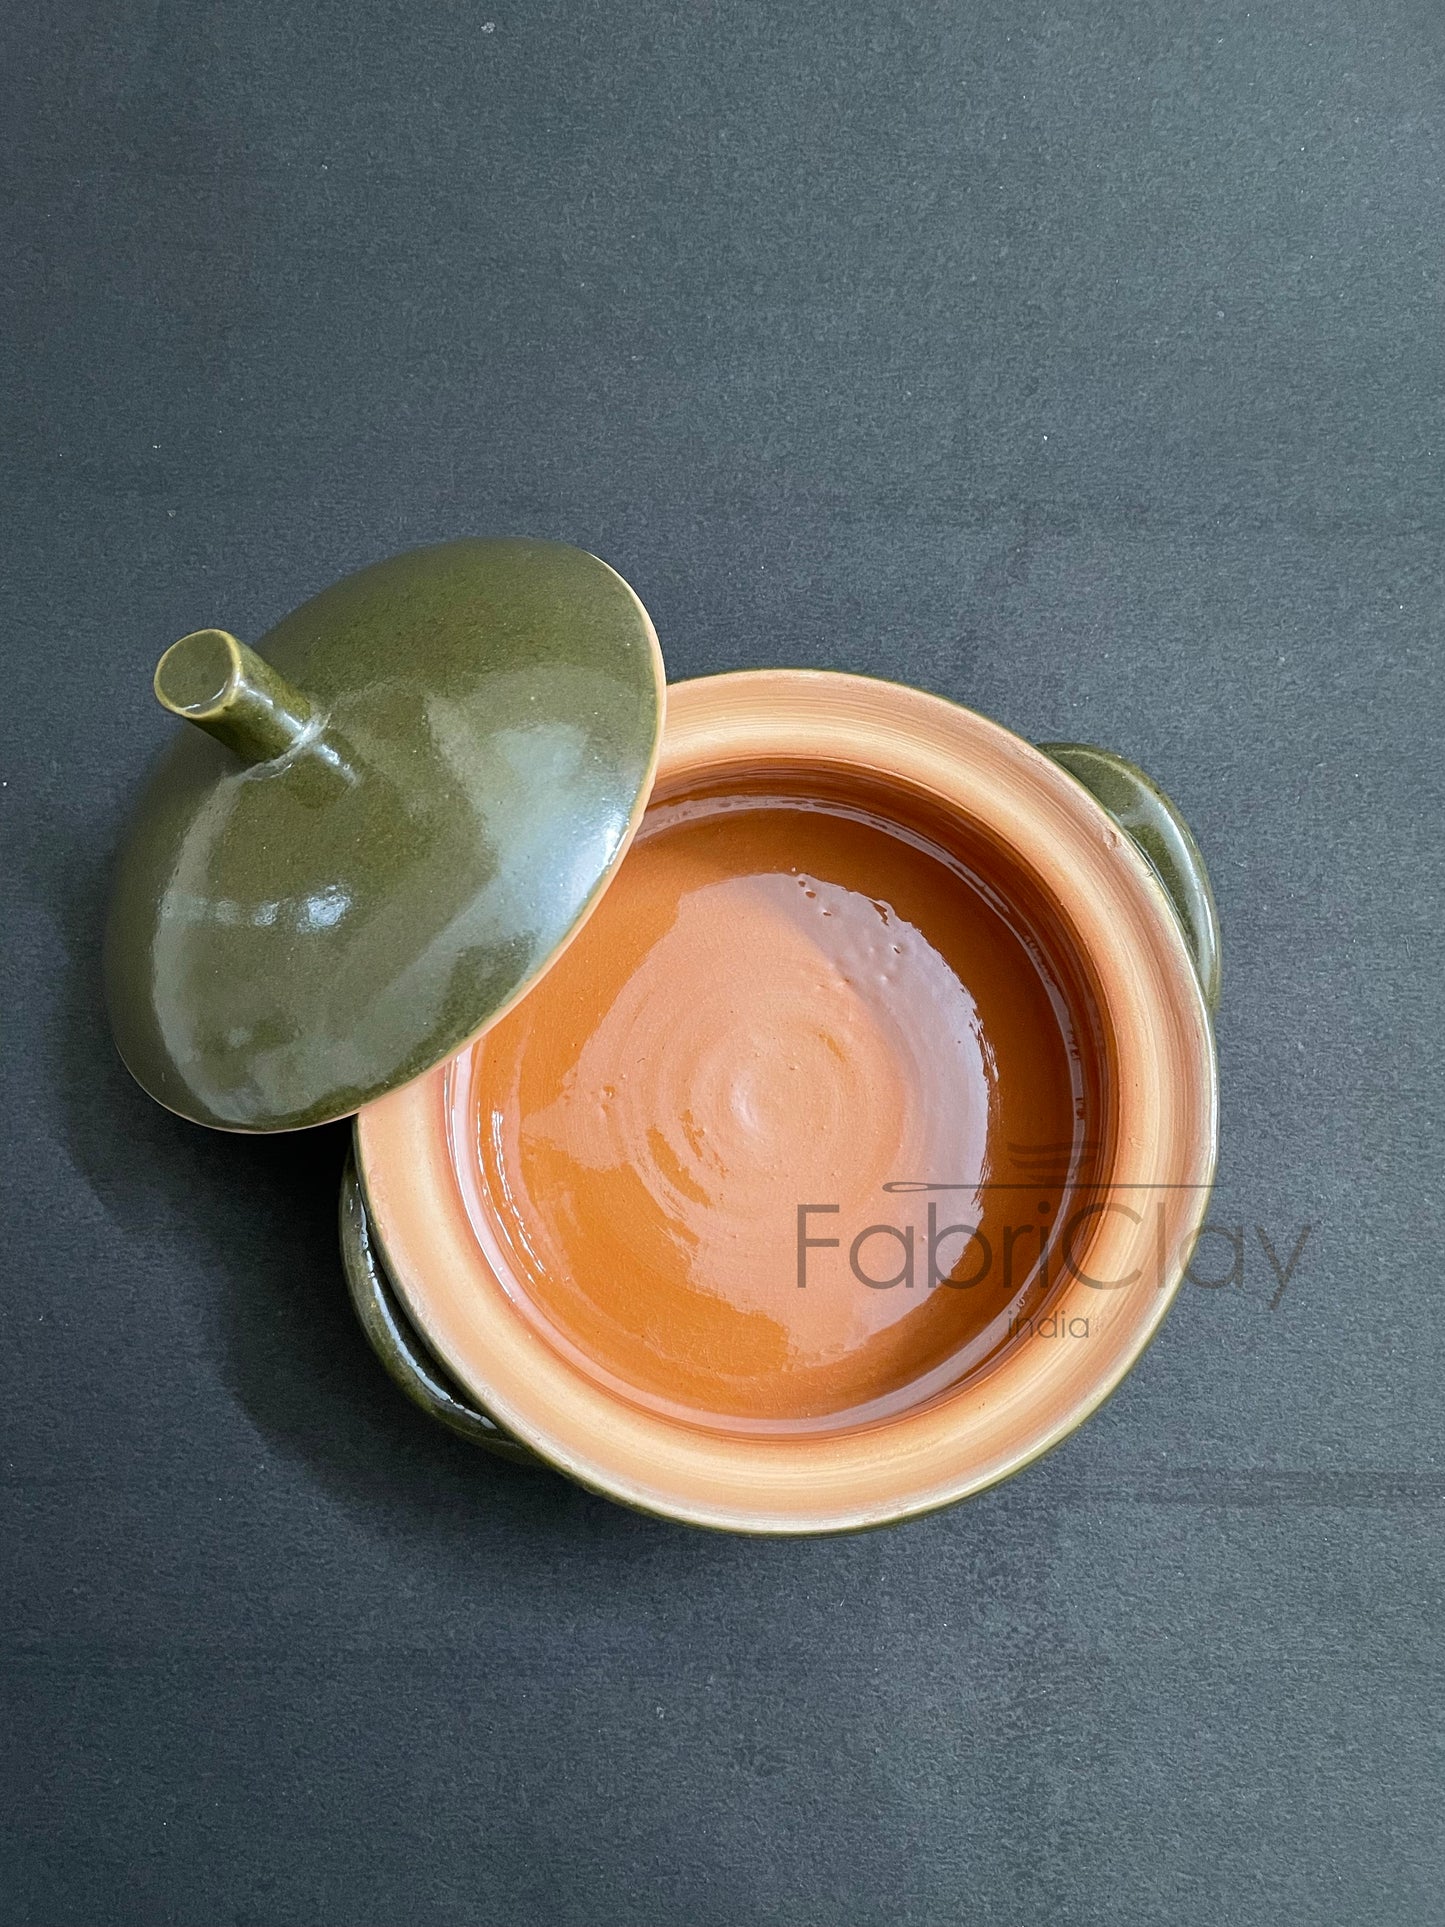 Ceramic tableware